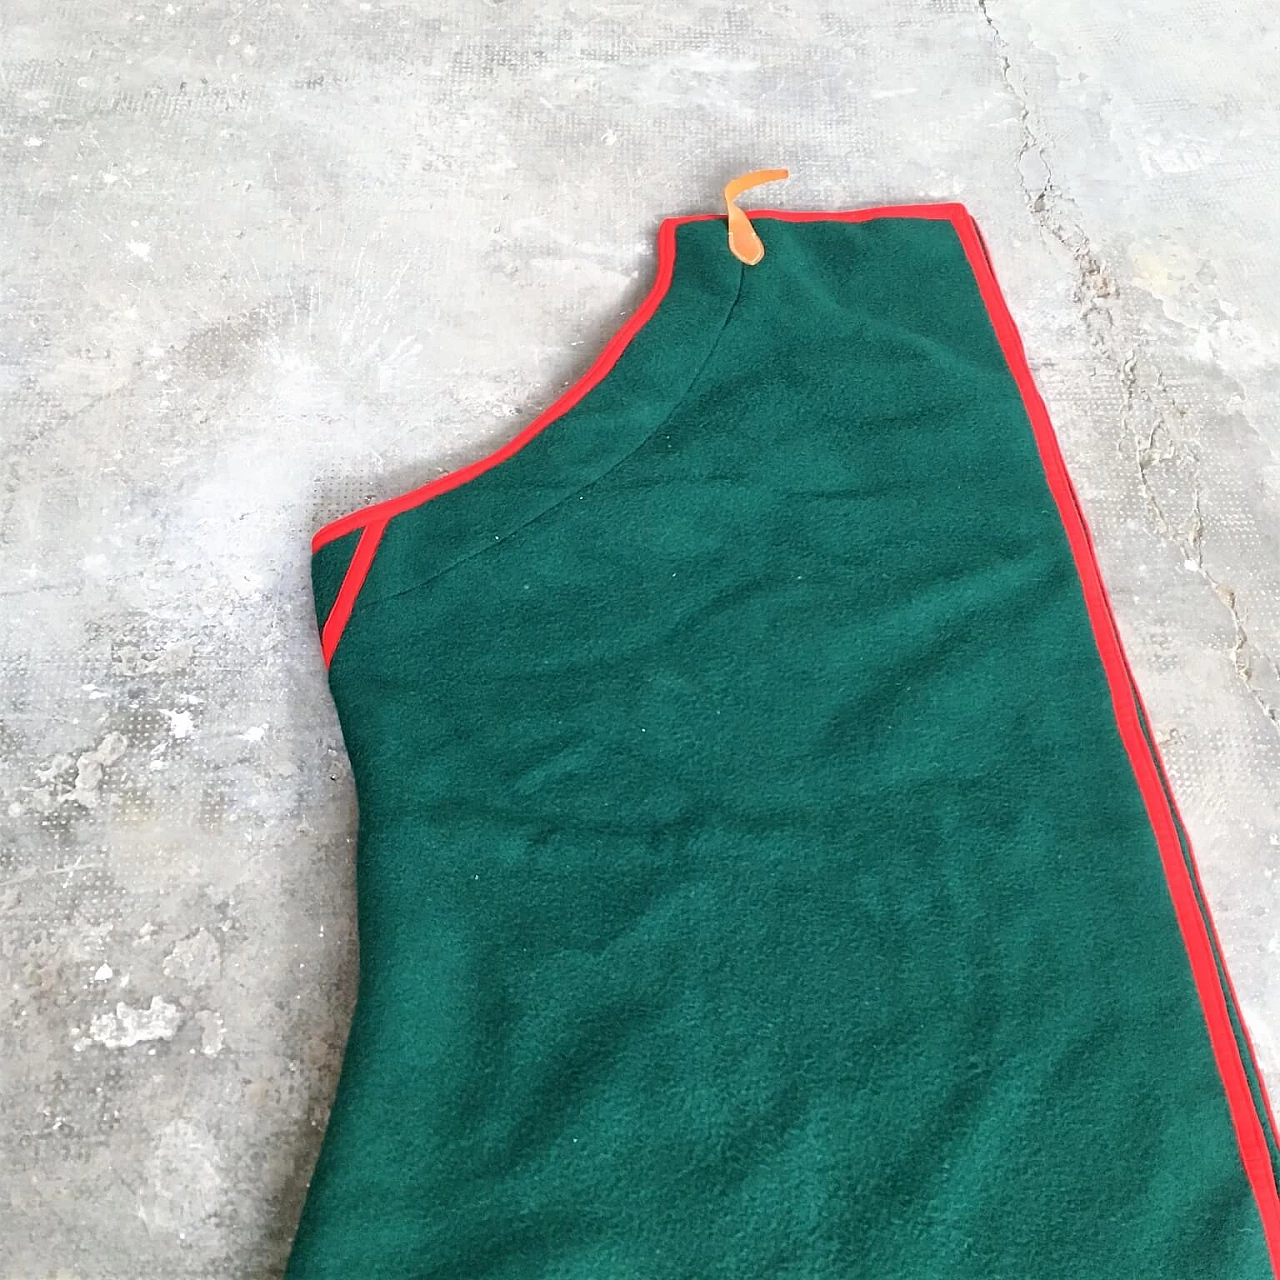 Coperta verde Selleria Pariani, realizzata a mano, pura lana vergine, profili rossi e cuoio, 1980 1071707